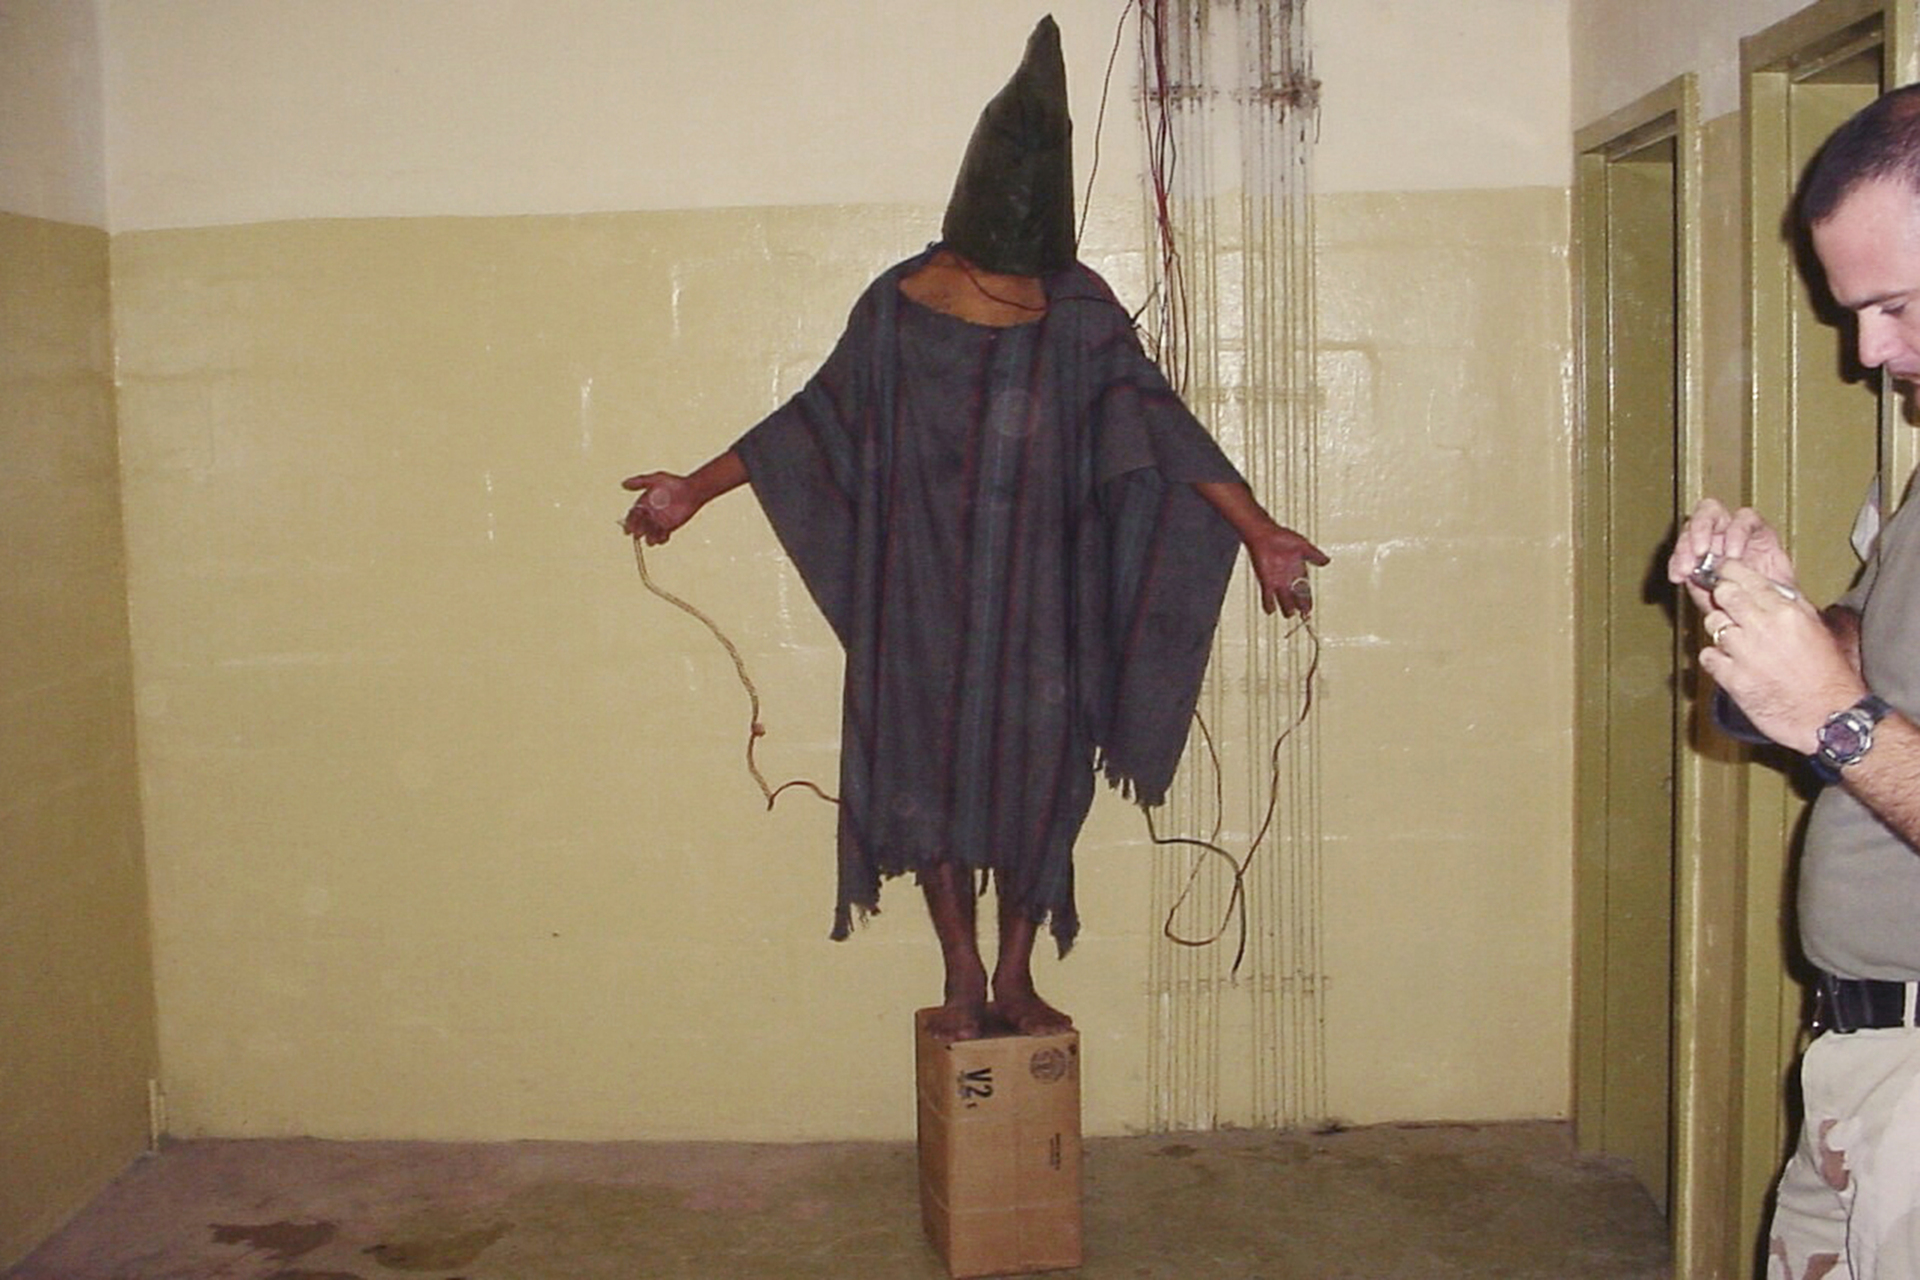 Detenido no identificado se encuntra parado sobre una baja con una bolsa en la cabeza y cables pegados a él para ser torturado en la prisión de Abu Ghraib. (AP)